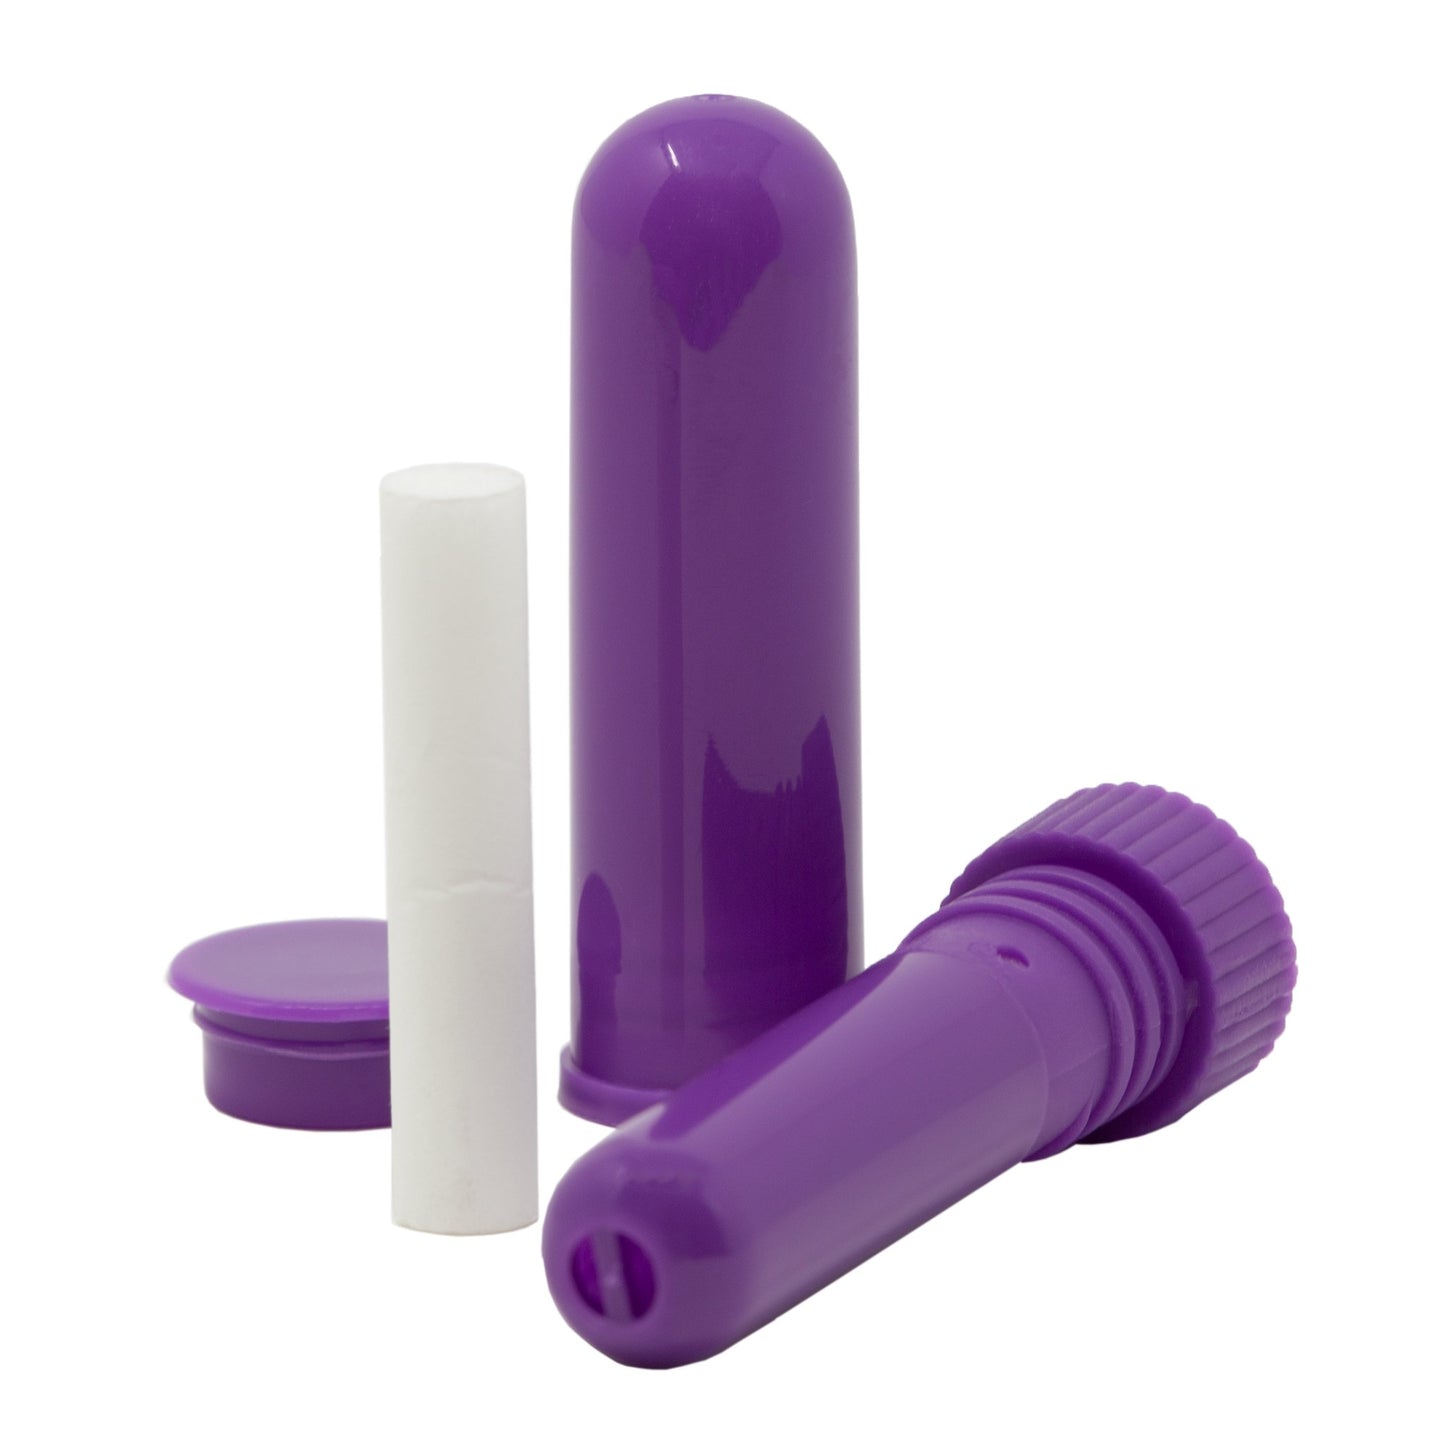 Aromatherapy Inhaler - Purple